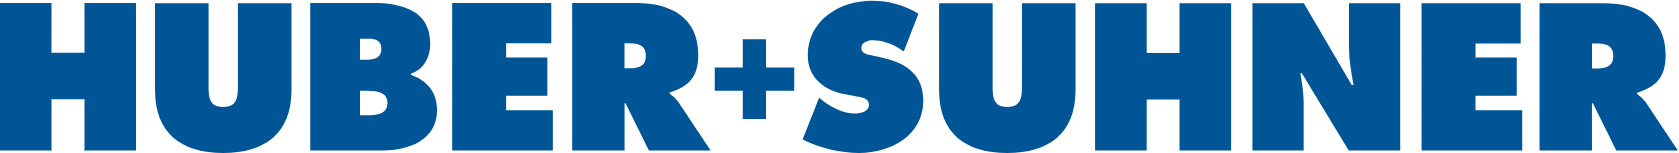 huber-suhner-logo-2019-svg